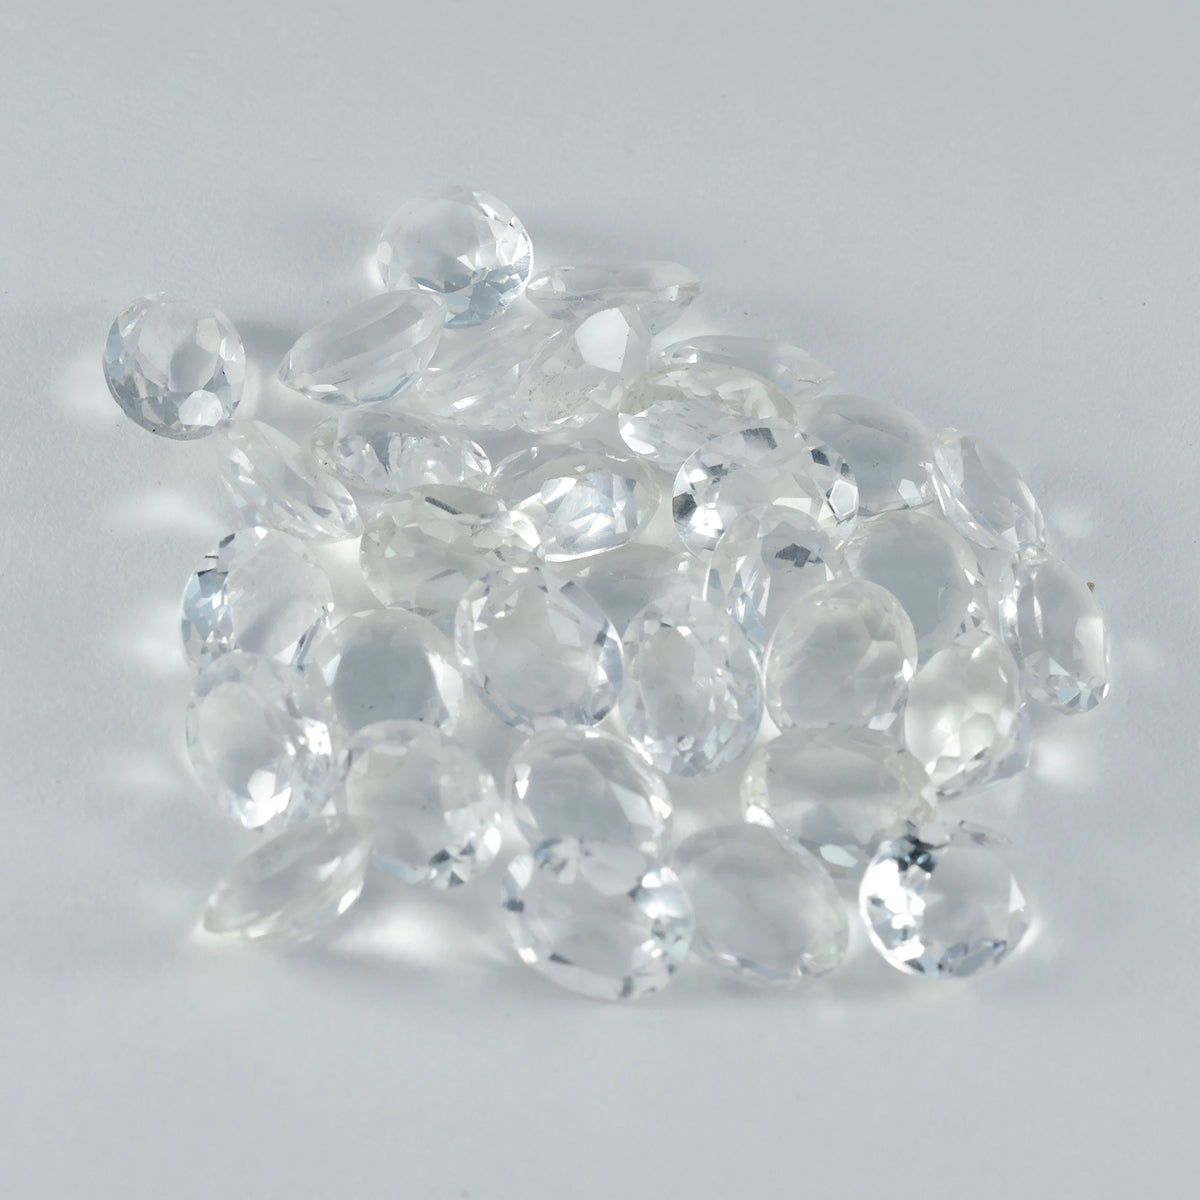 Riyogems 1PC wit kristalkwarts gefacetteerd 4x6 mm ovale vorm aantrekkelijke kwaliteit losse edelsteen